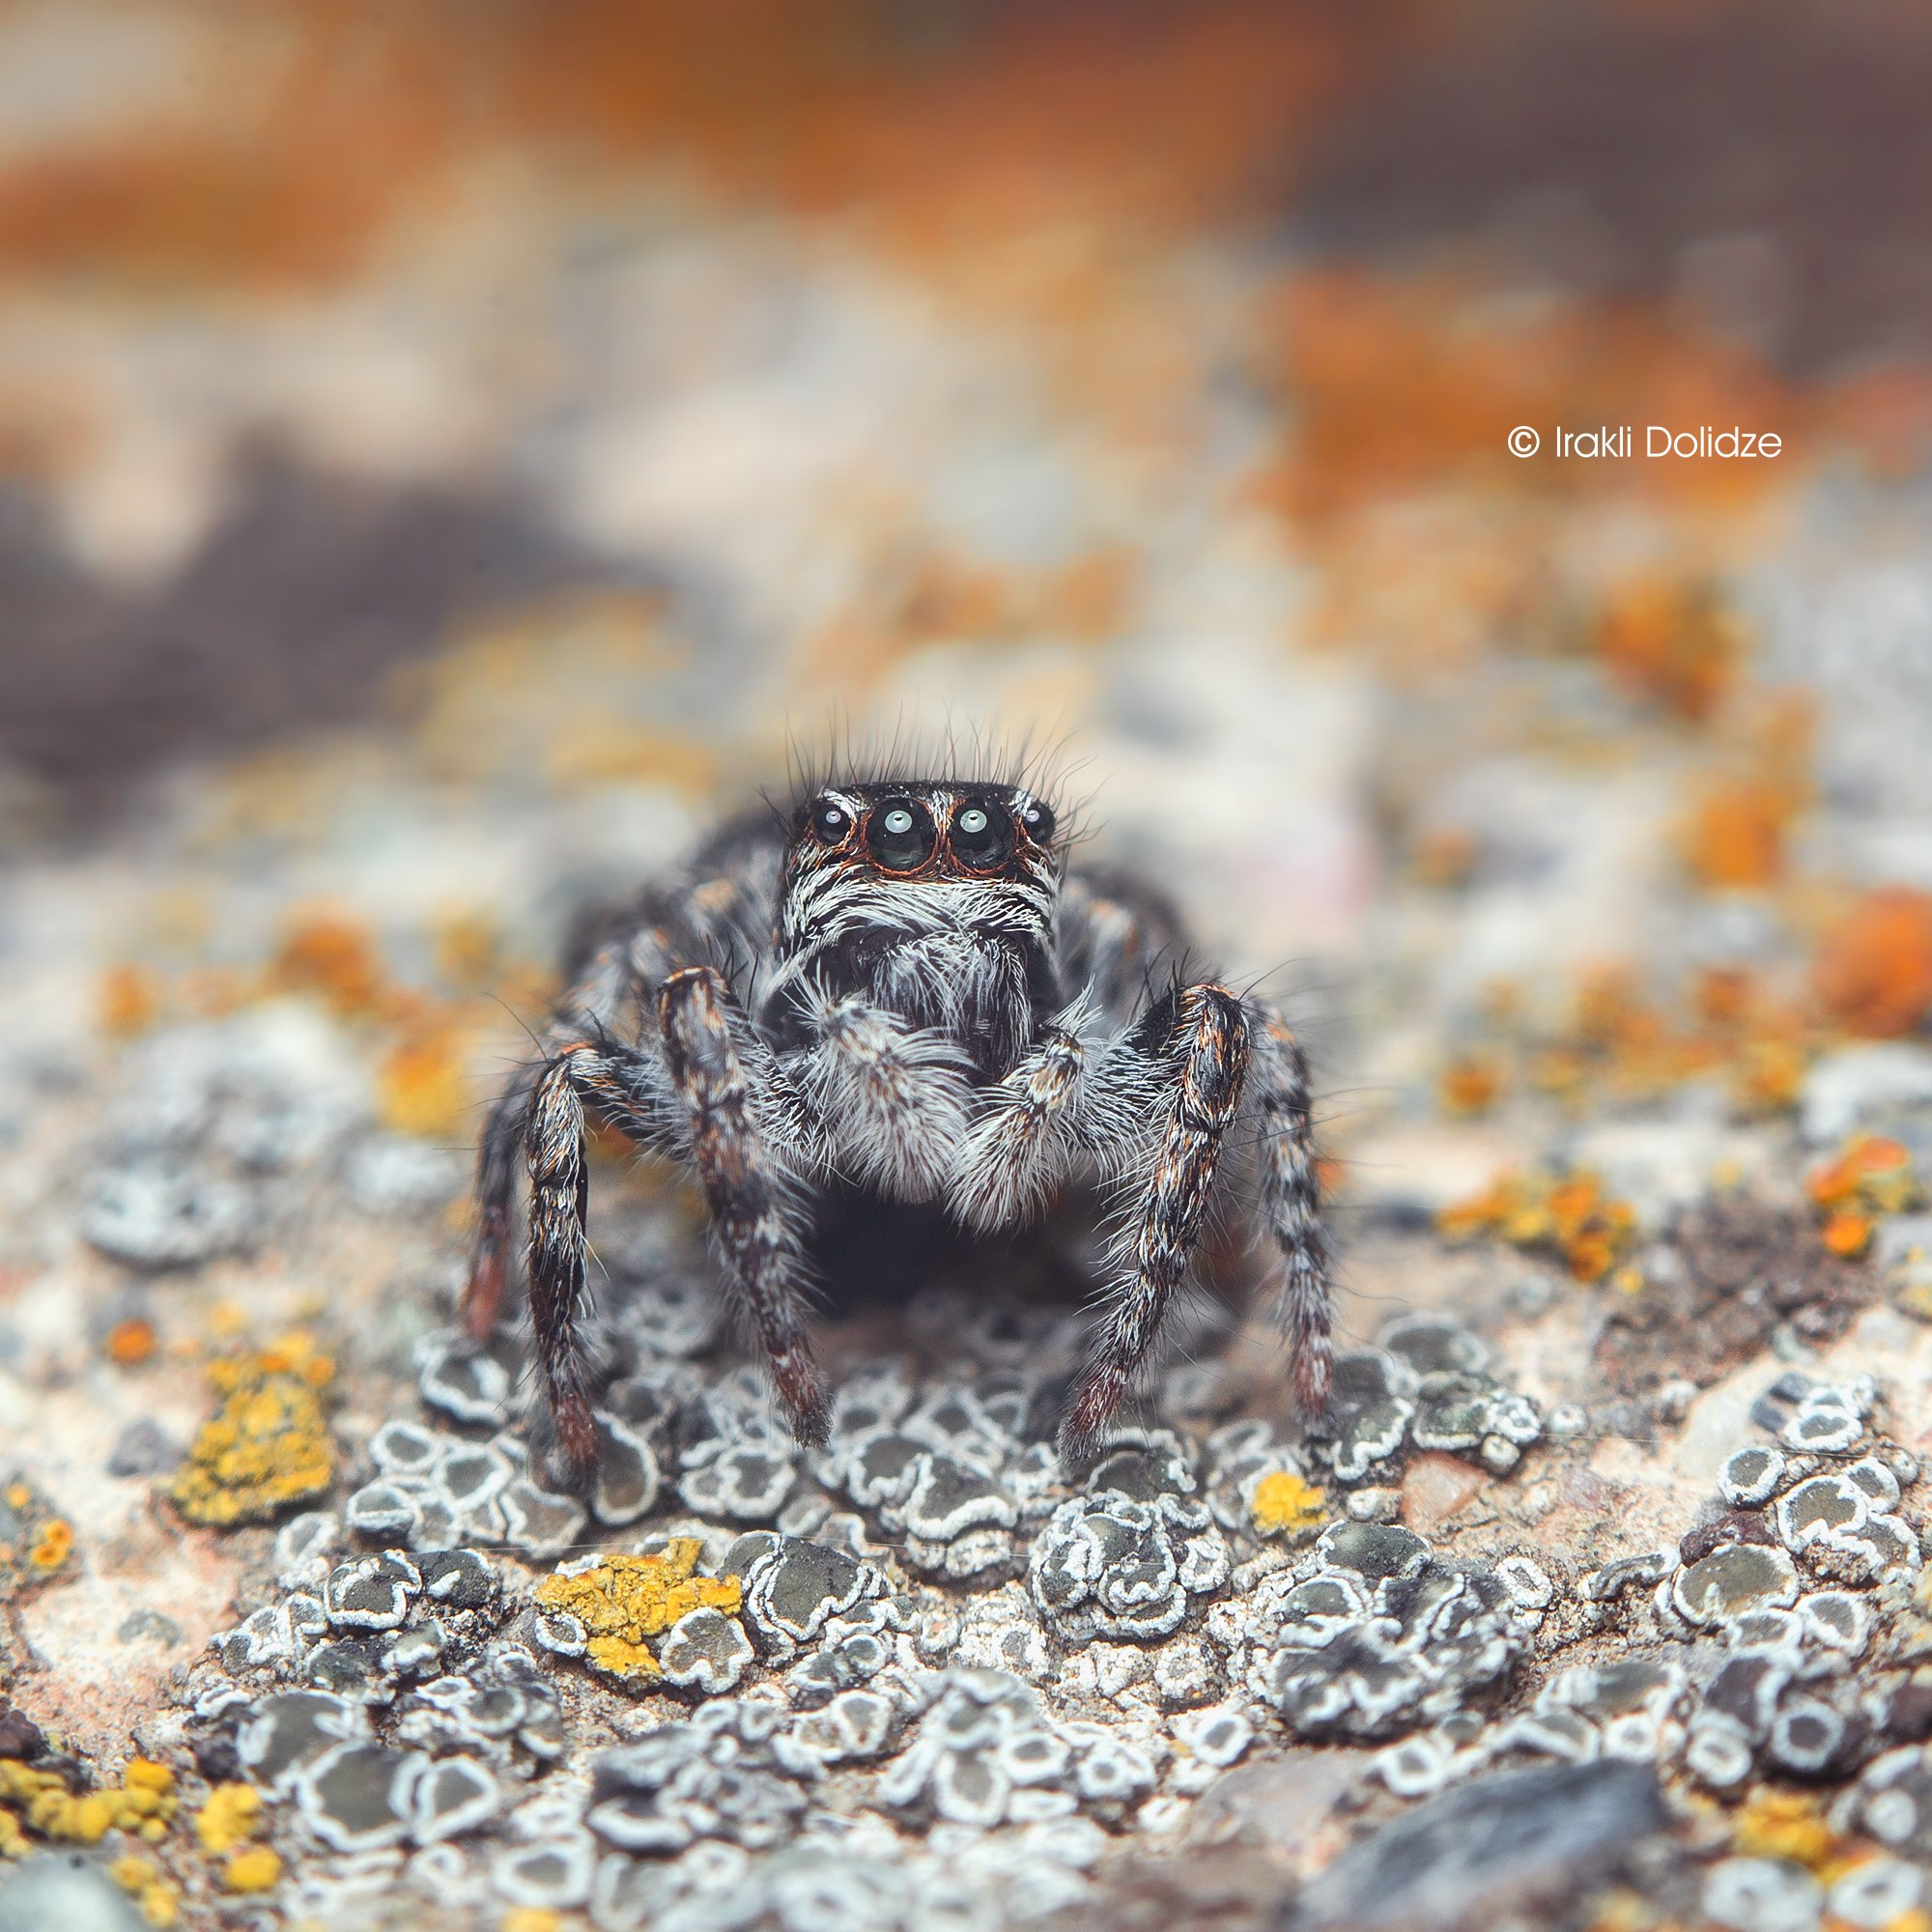 spider, philaeus chrysops, female, macro, nature, close up, canon, ირაკლი დოლიძე